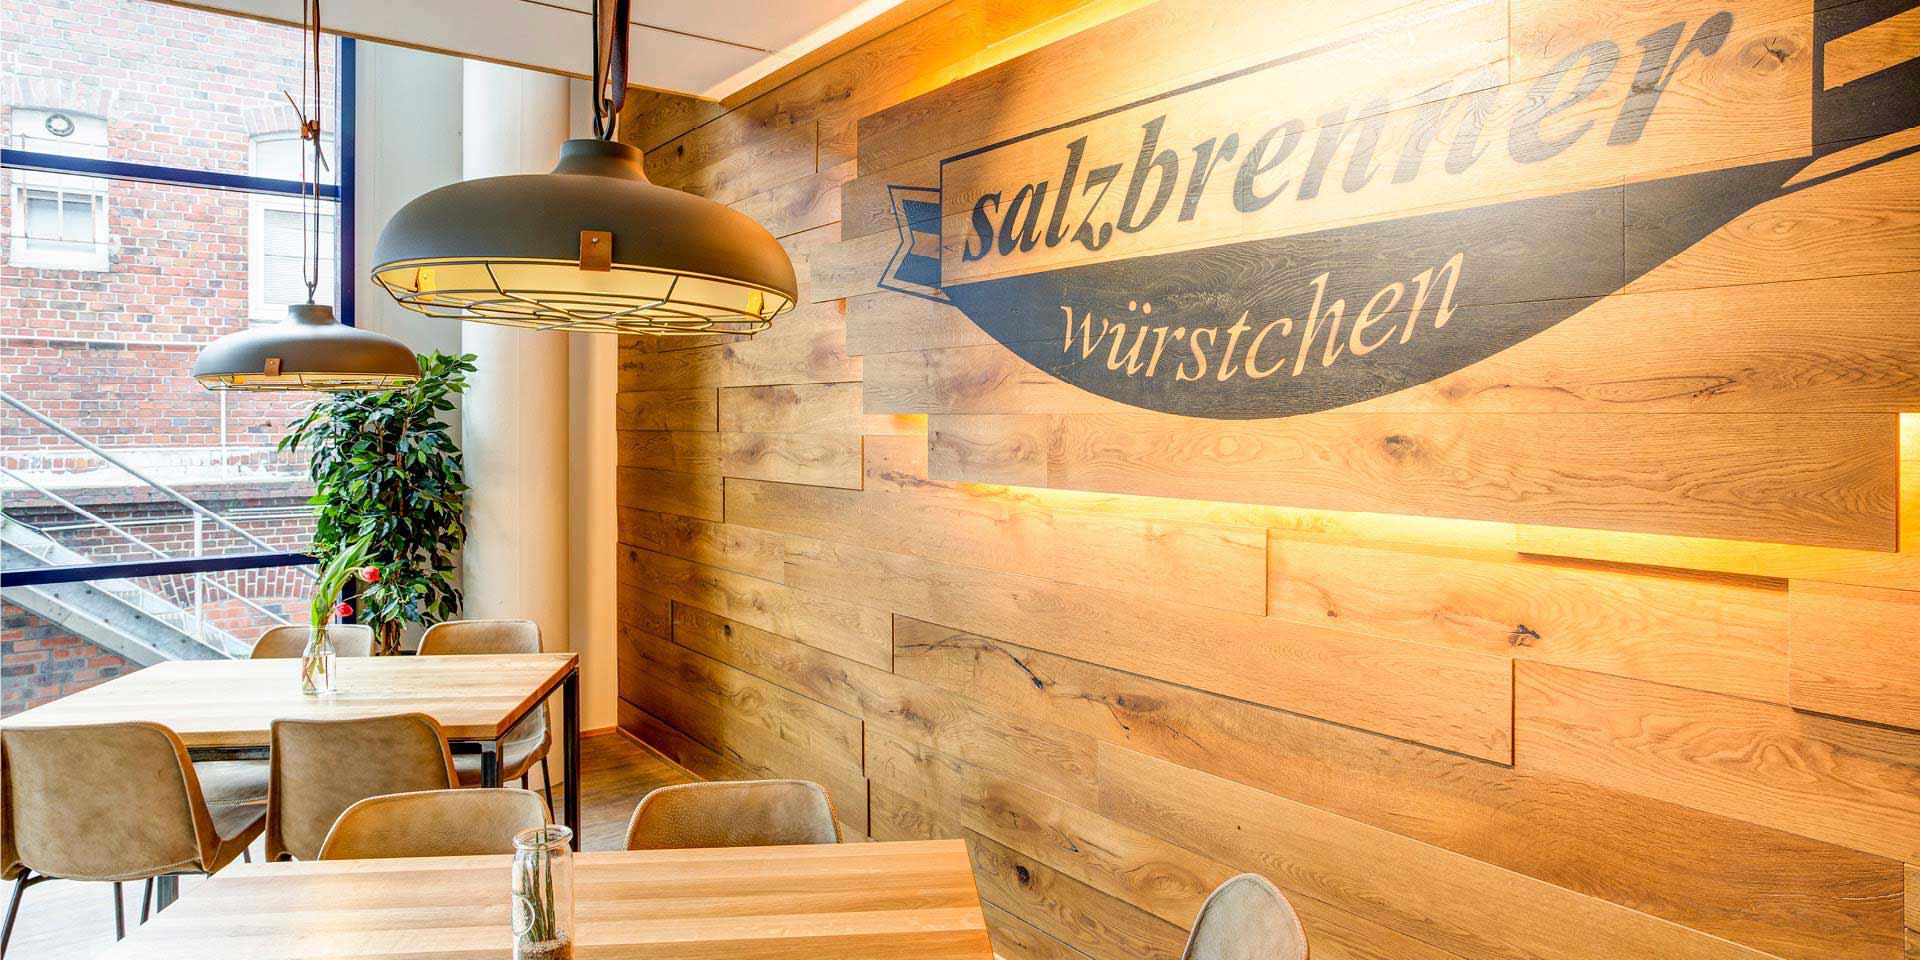 Objekteinrichtung für Ladenbau & Gastronomie - Restaurant, Café, Bistro, Speiselokal, Eventlocation, Bar - Möbeltischlerei woodendesign feine Möbel aus Hamburg